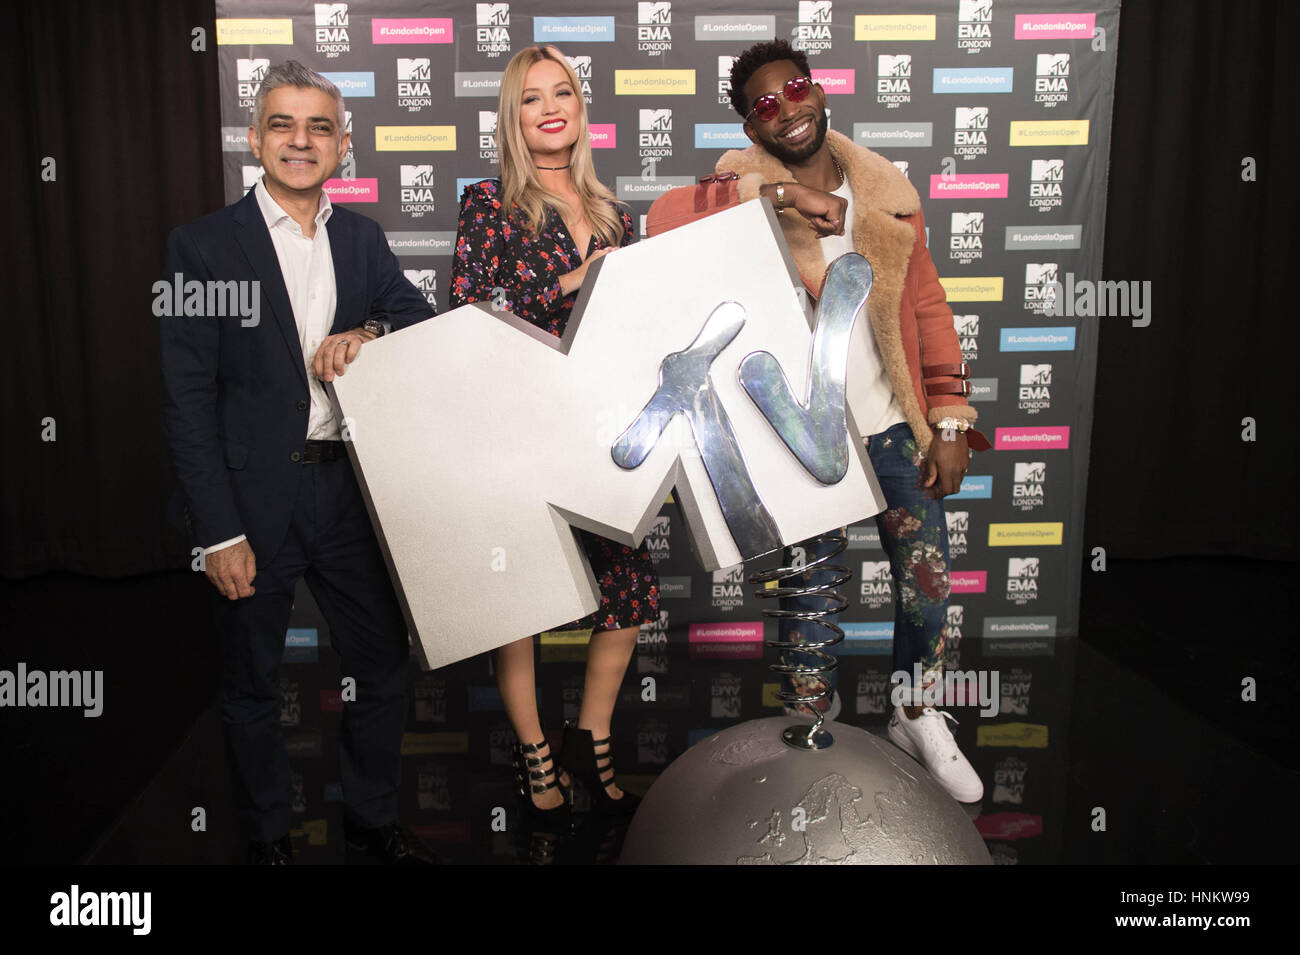 Bürgermeister von London Sadiq Khan posiert für ein Foto mit Tinie Tempah und MTV Moderatorin Laura Whitmore in den Geschäftsräumen von Viacom in London, wo er verkündete, dass die MTV European Music Awards am 12. November in der Stadt stattfinden wird. Stockfoto